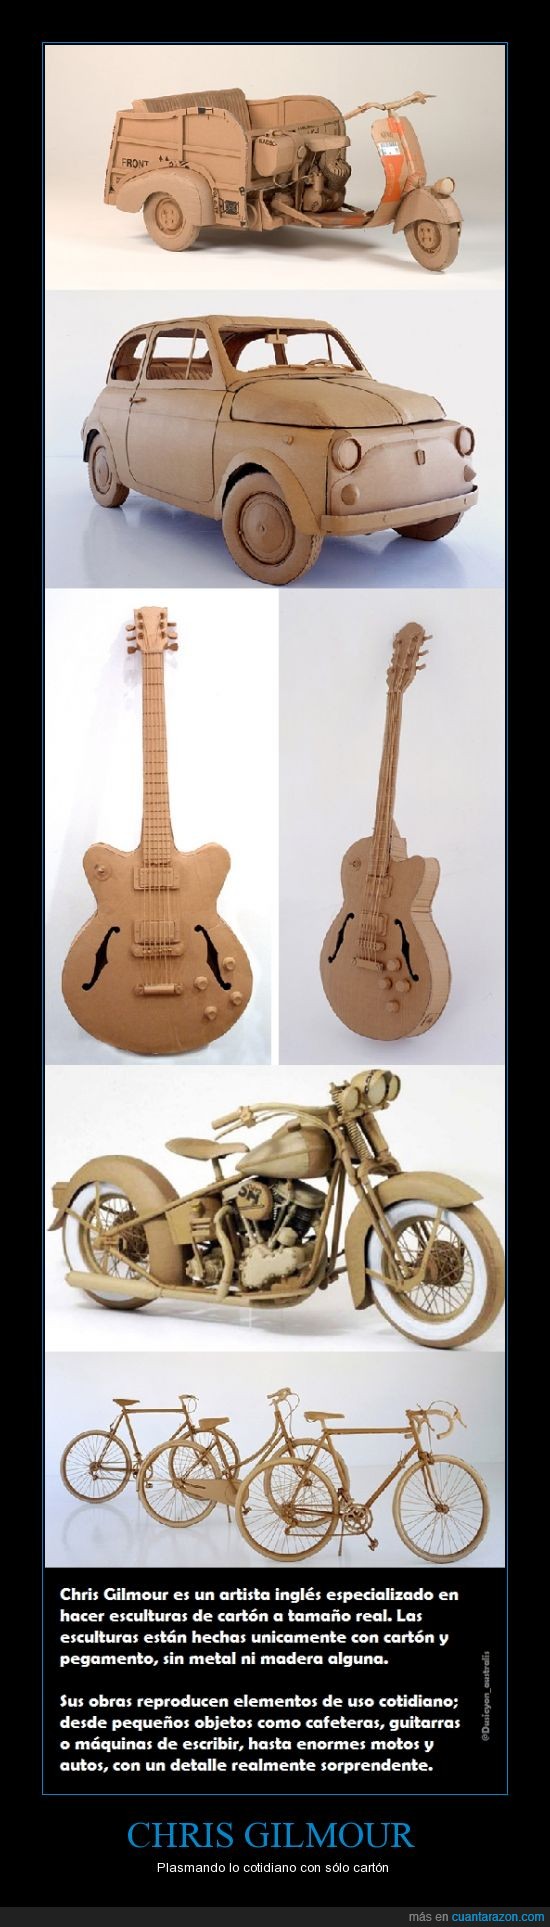 cartón,coche,Cris Gilmour,guitarra,moto,plasmar